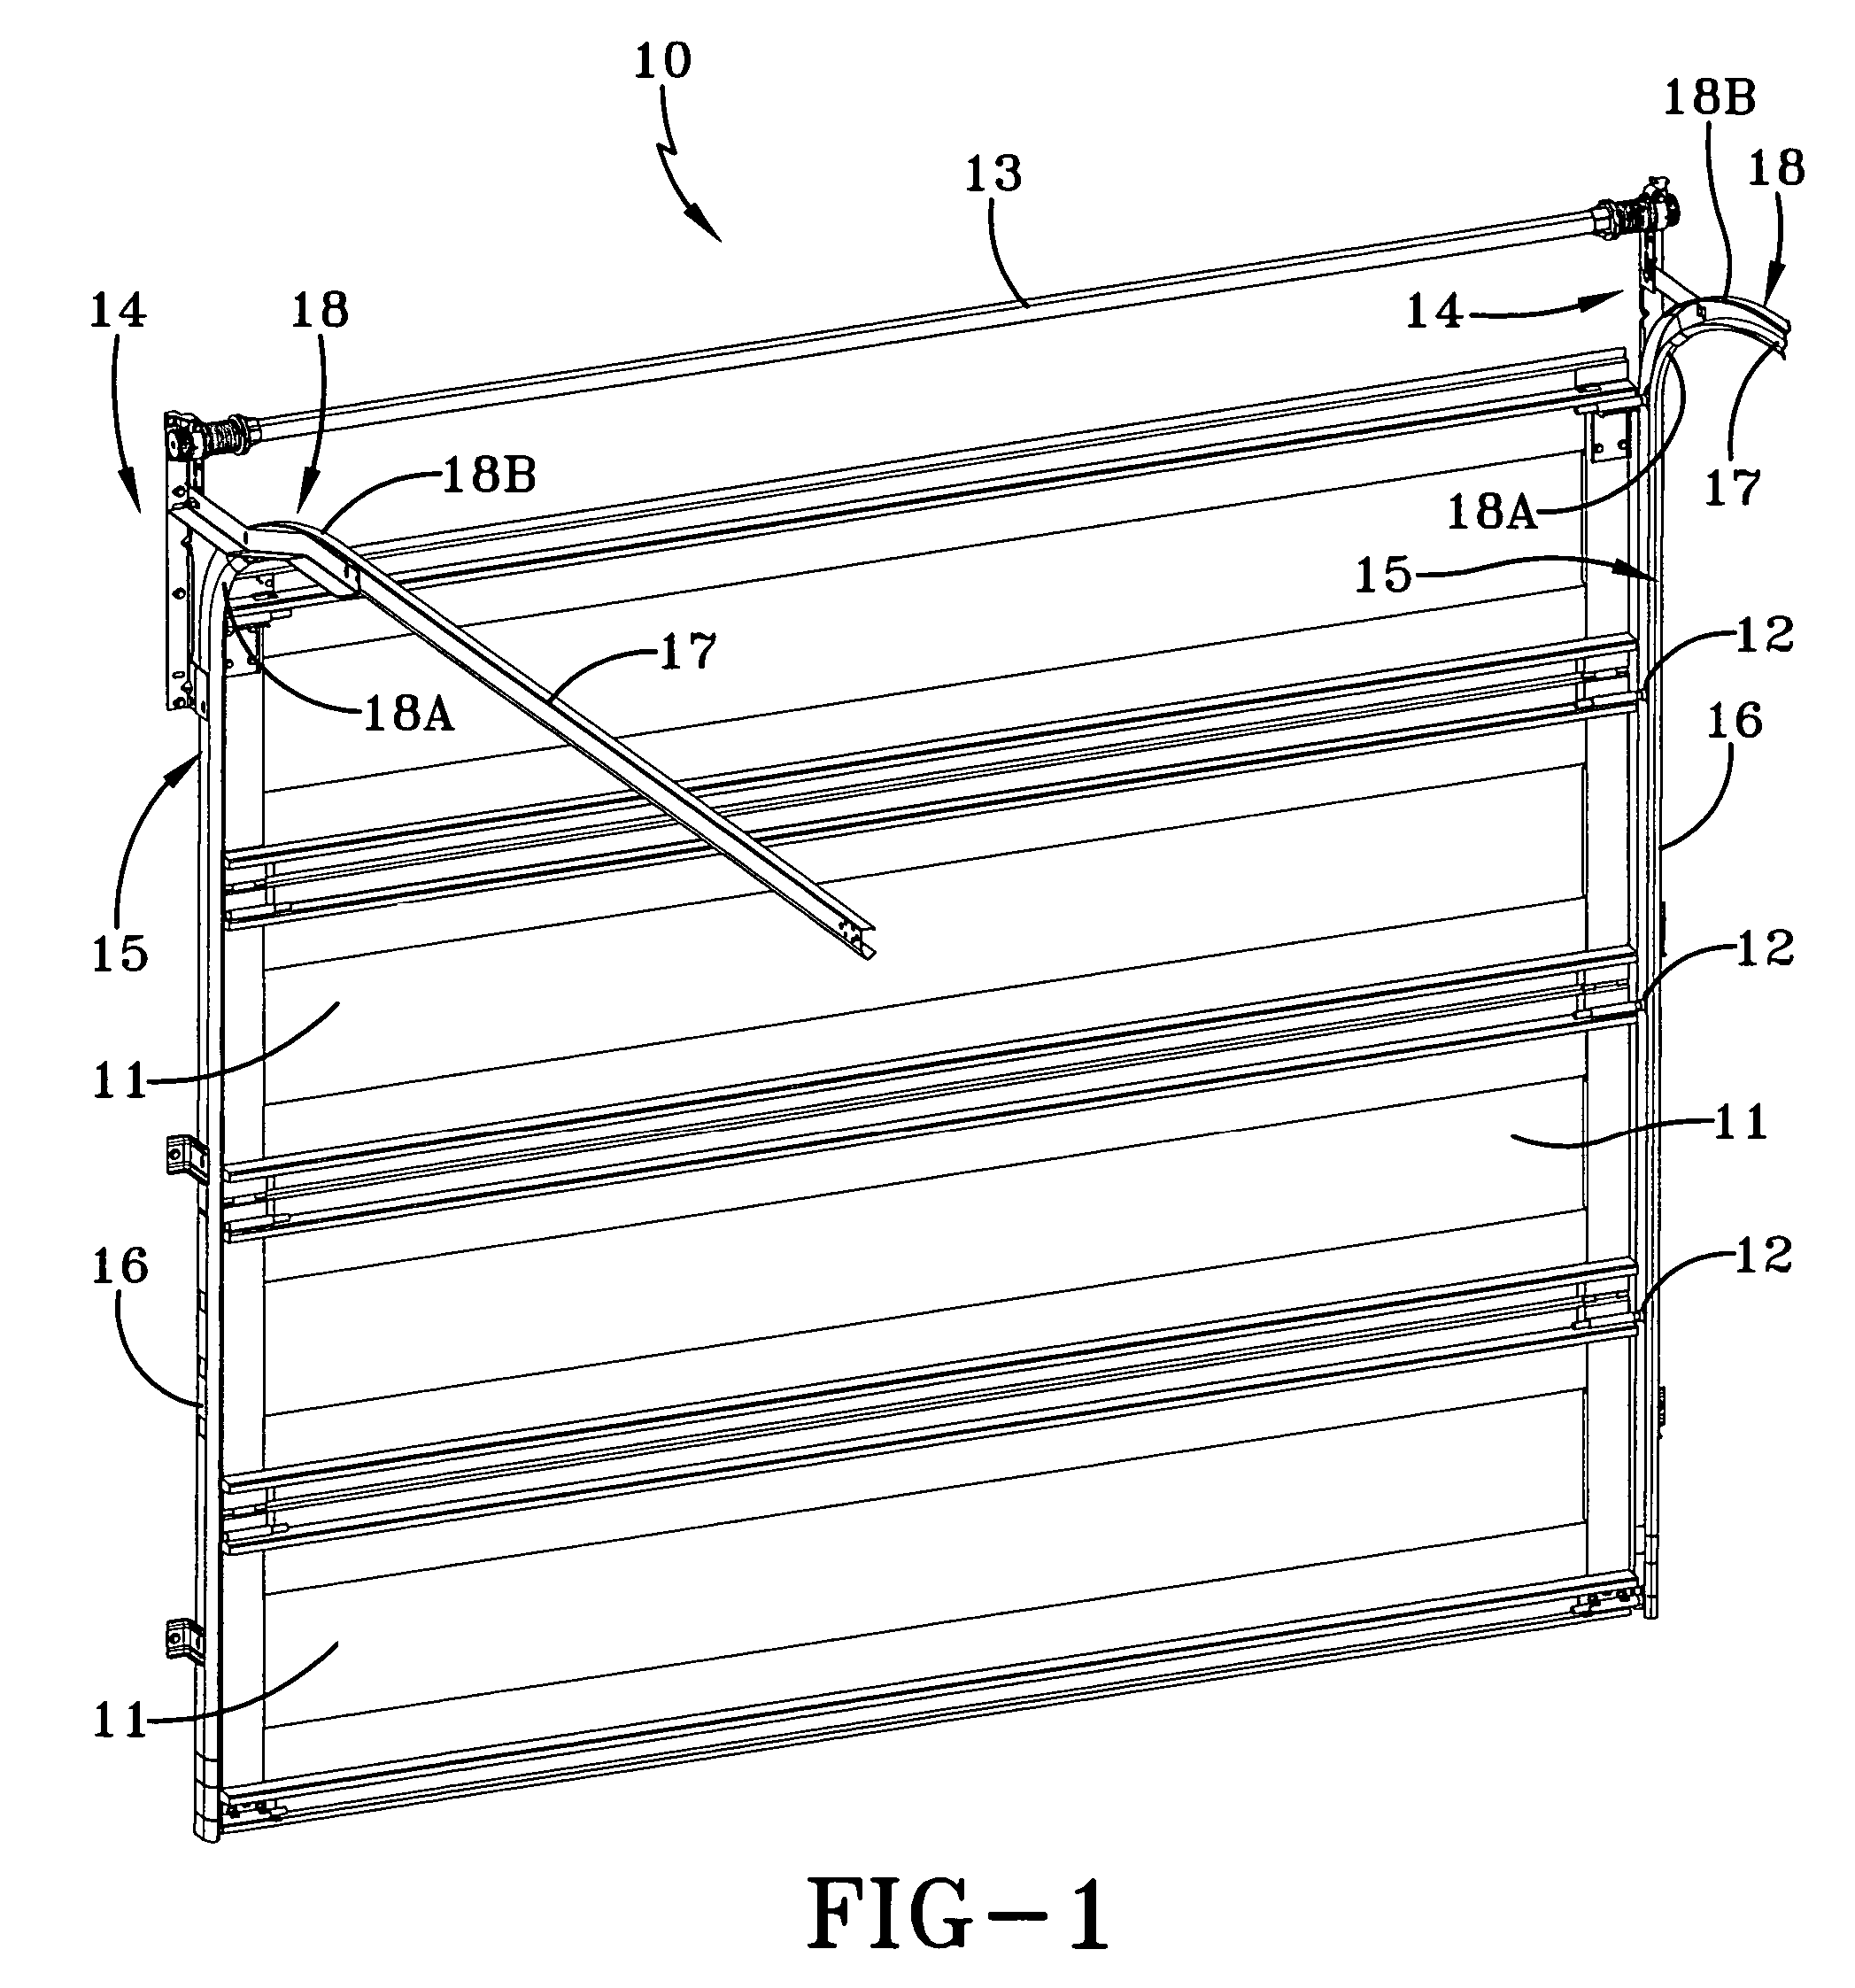 Breakaway track system for an overhead door